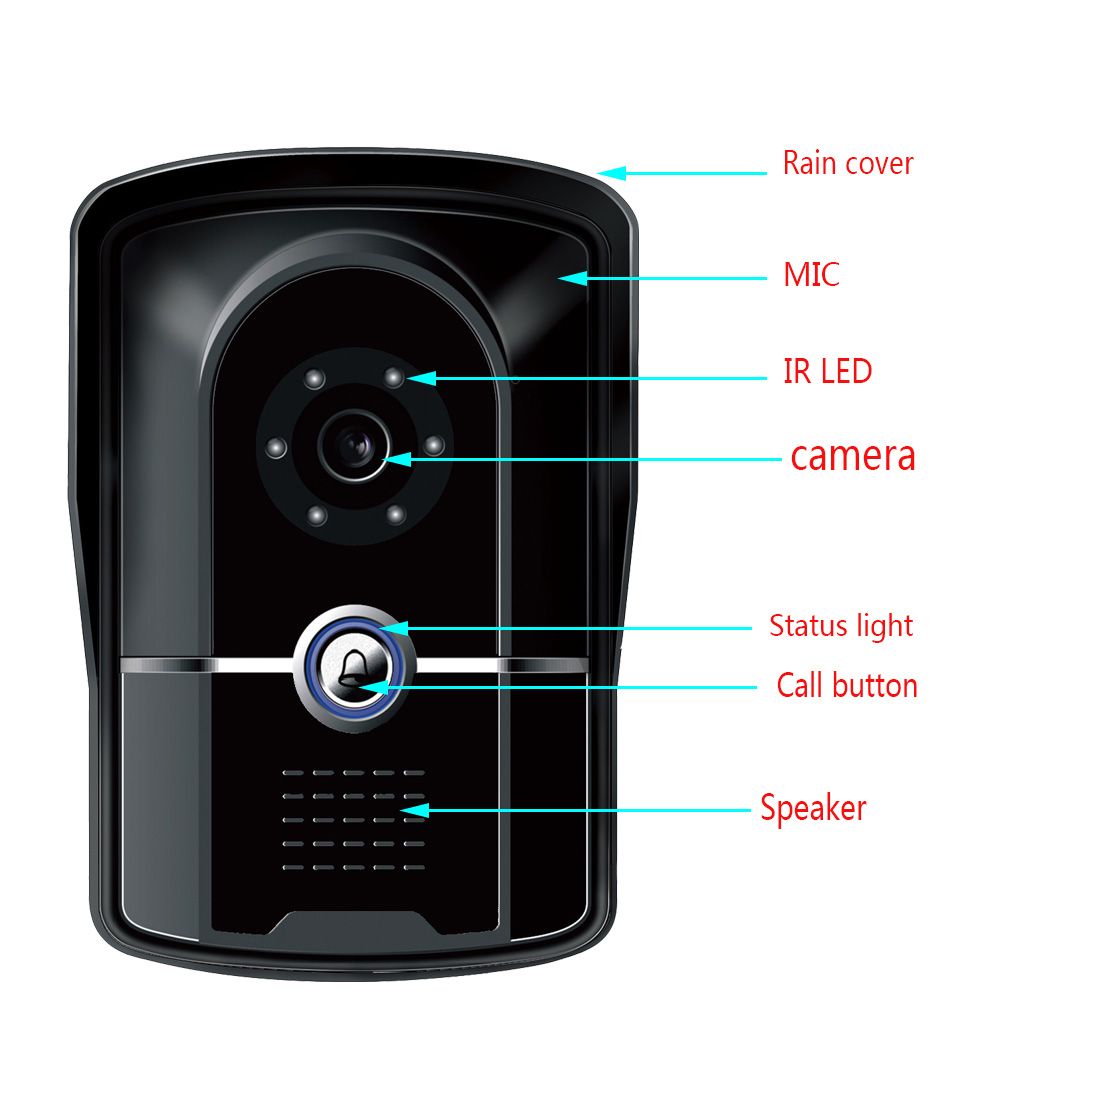 ENNIO-SY813MK21-7inch-TFT-LCD-Video-Door-Phone-Doorbell-Intercom-Kit-2-Cameras-1-Monitor-Night-Visio-1050830